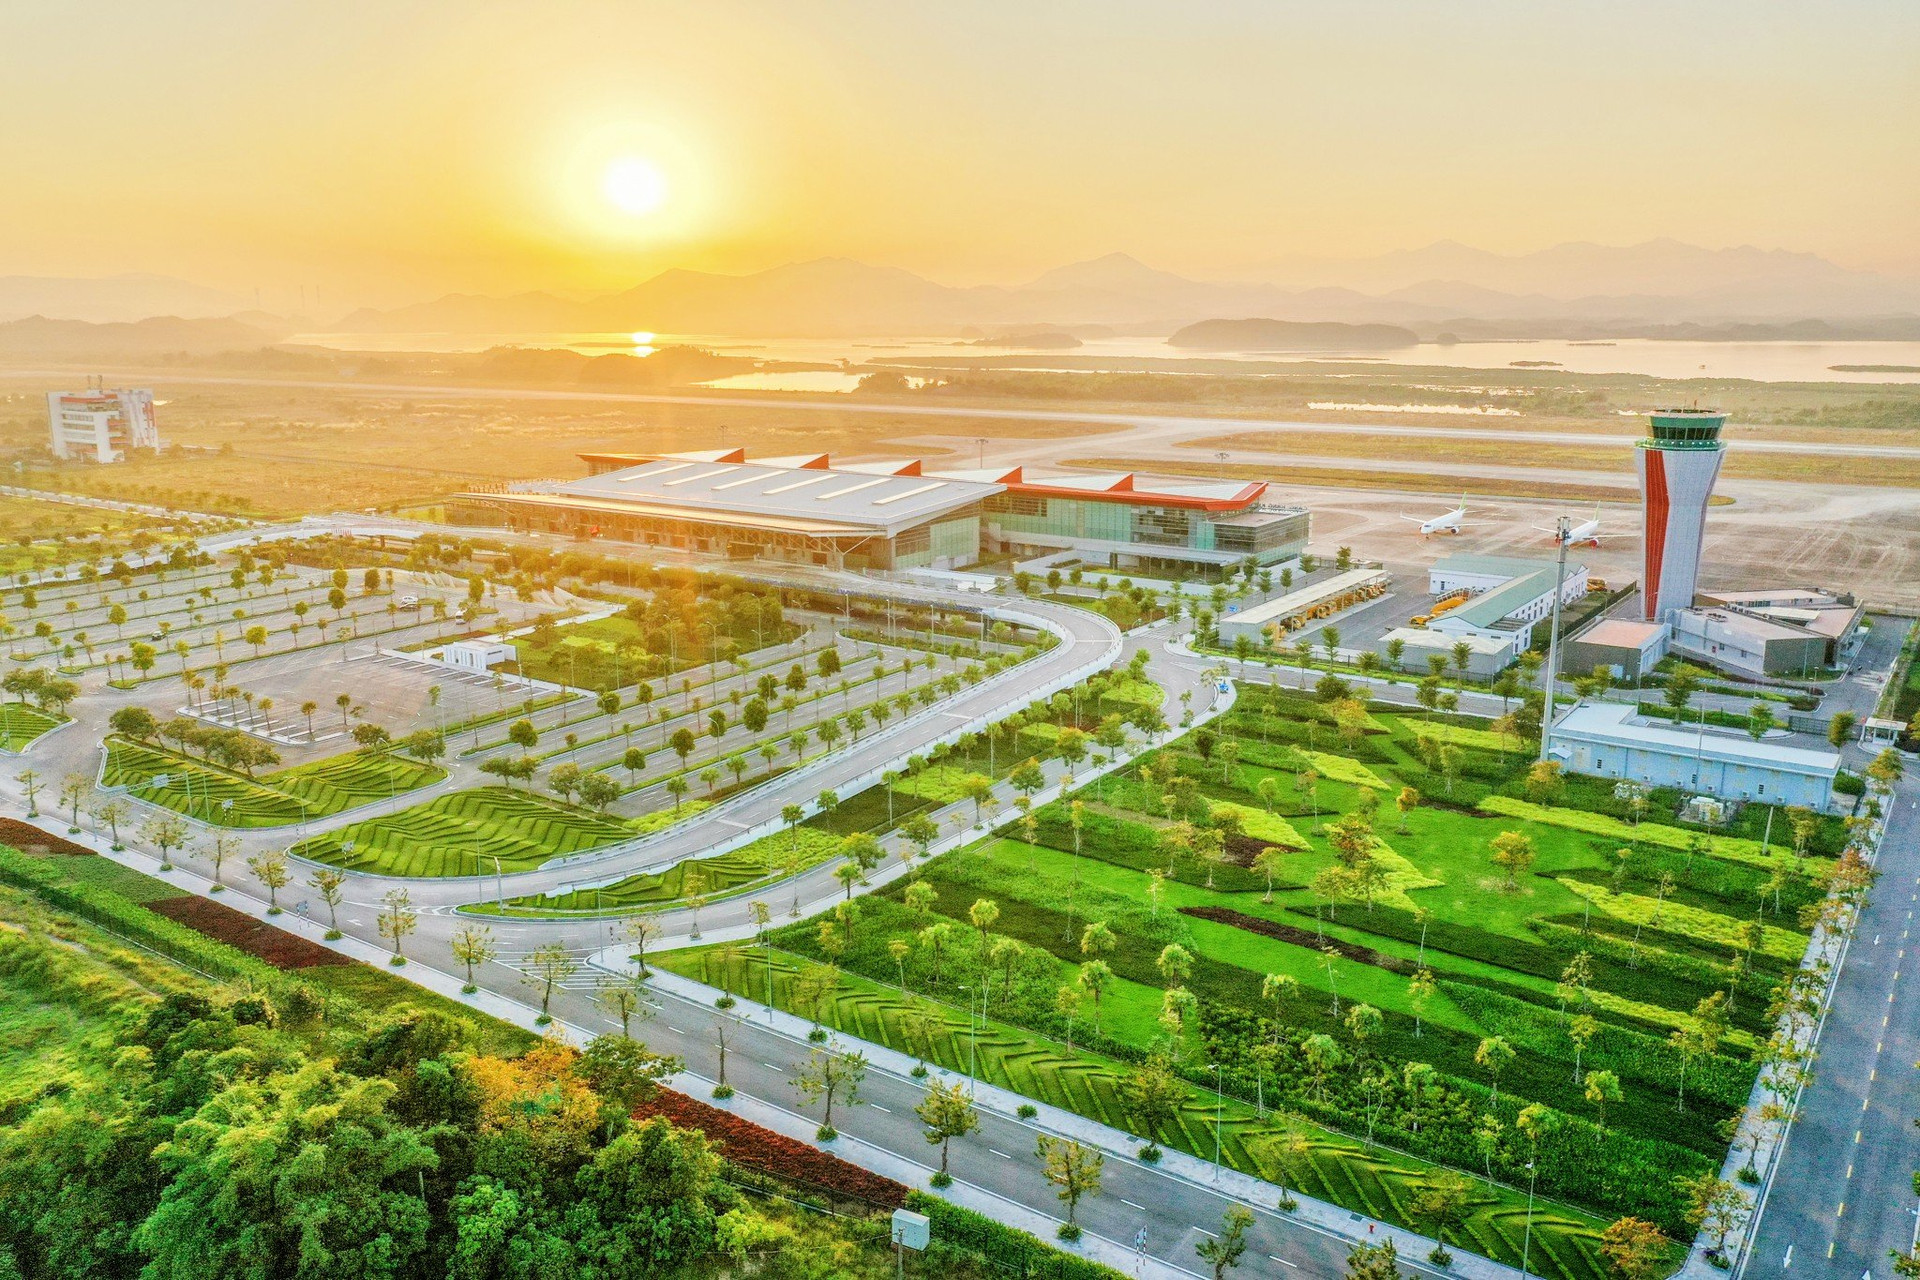 Cảng hàng không Vân Đồn, sân bay tư nhân đầu tiên của Việt Nam. Ảnh: Ngọc Đẹp/An ninh Tiền tệ - Tạp chí Người Đưa Tin Pháp luật